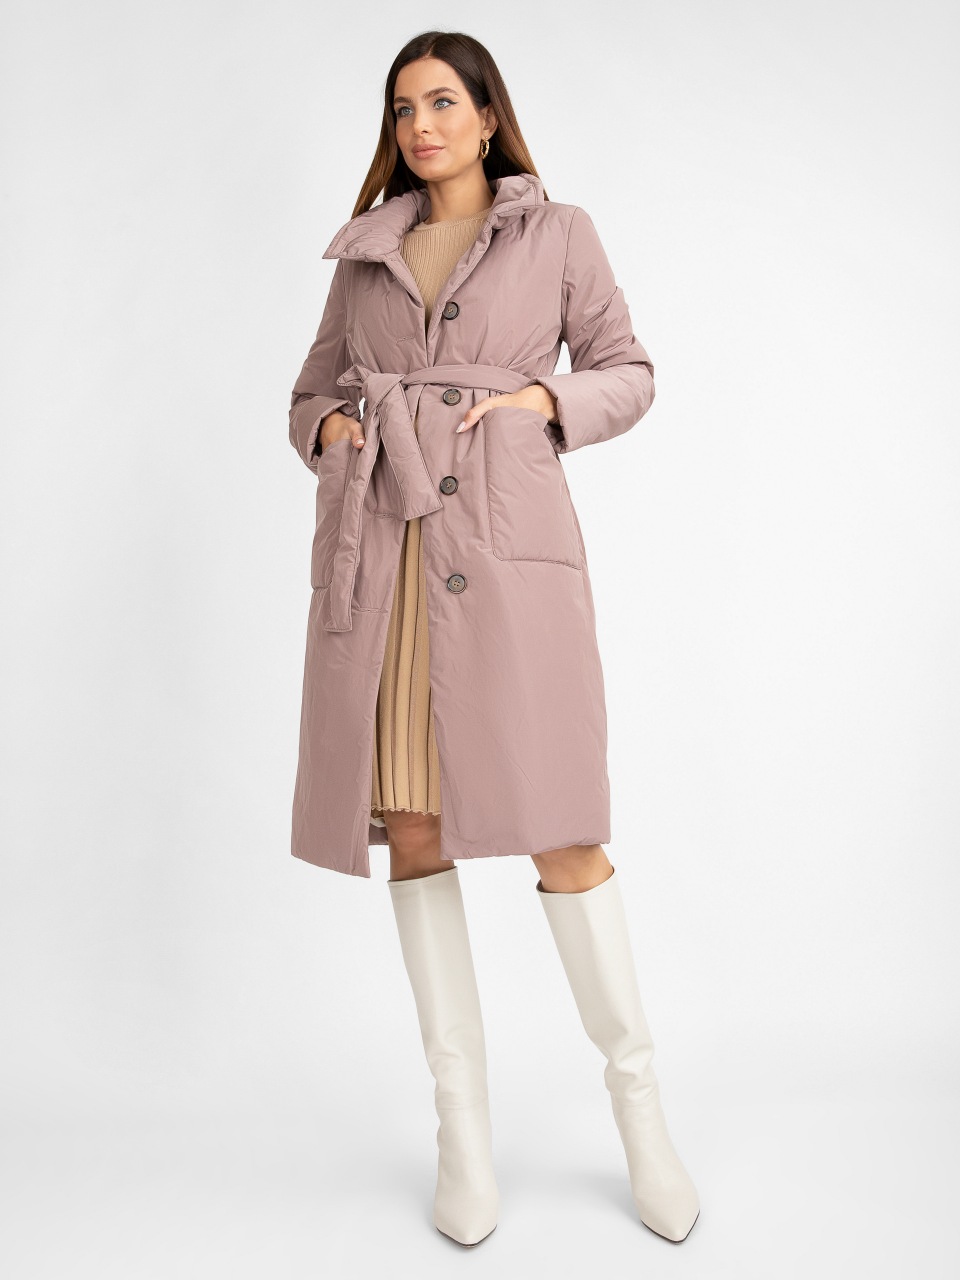 Пальто женское ElectraStyle 5У-2111-112 розовое 52 RU